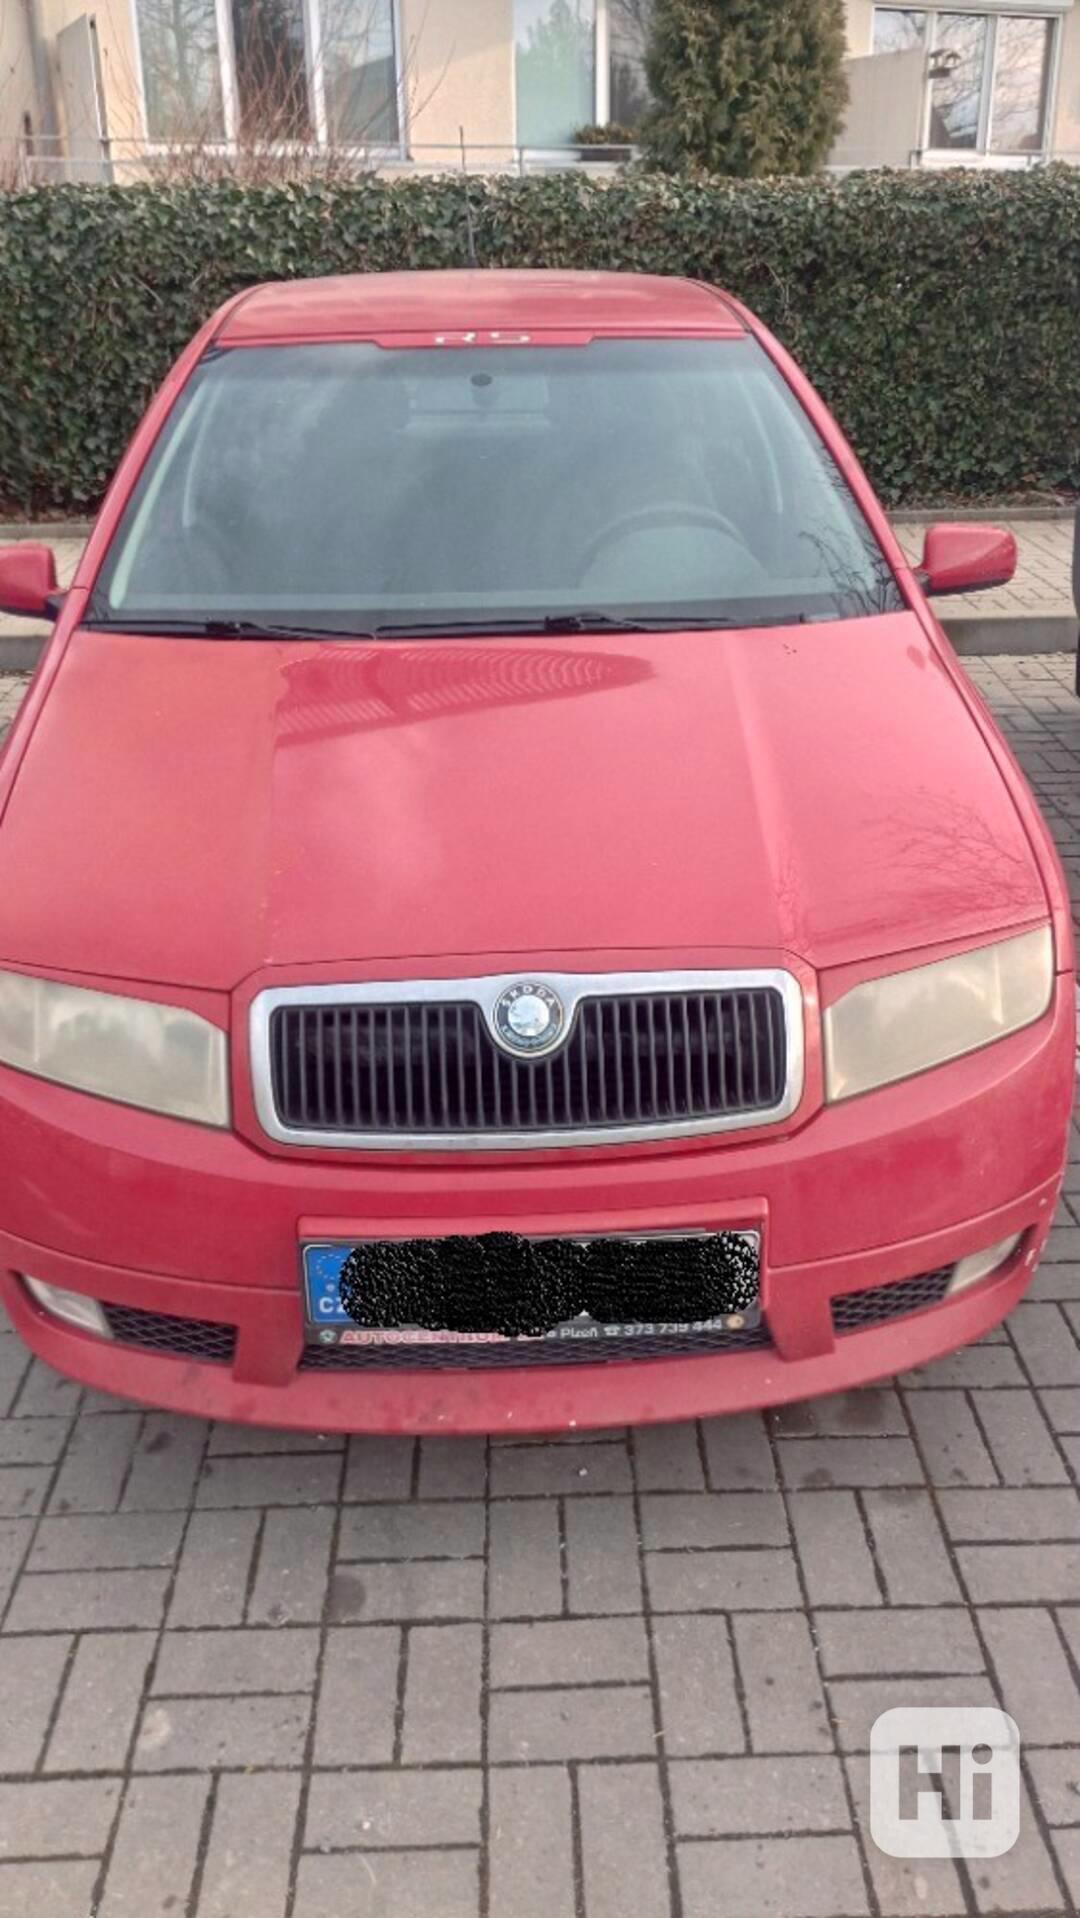 Škoda Fabia - foto 1